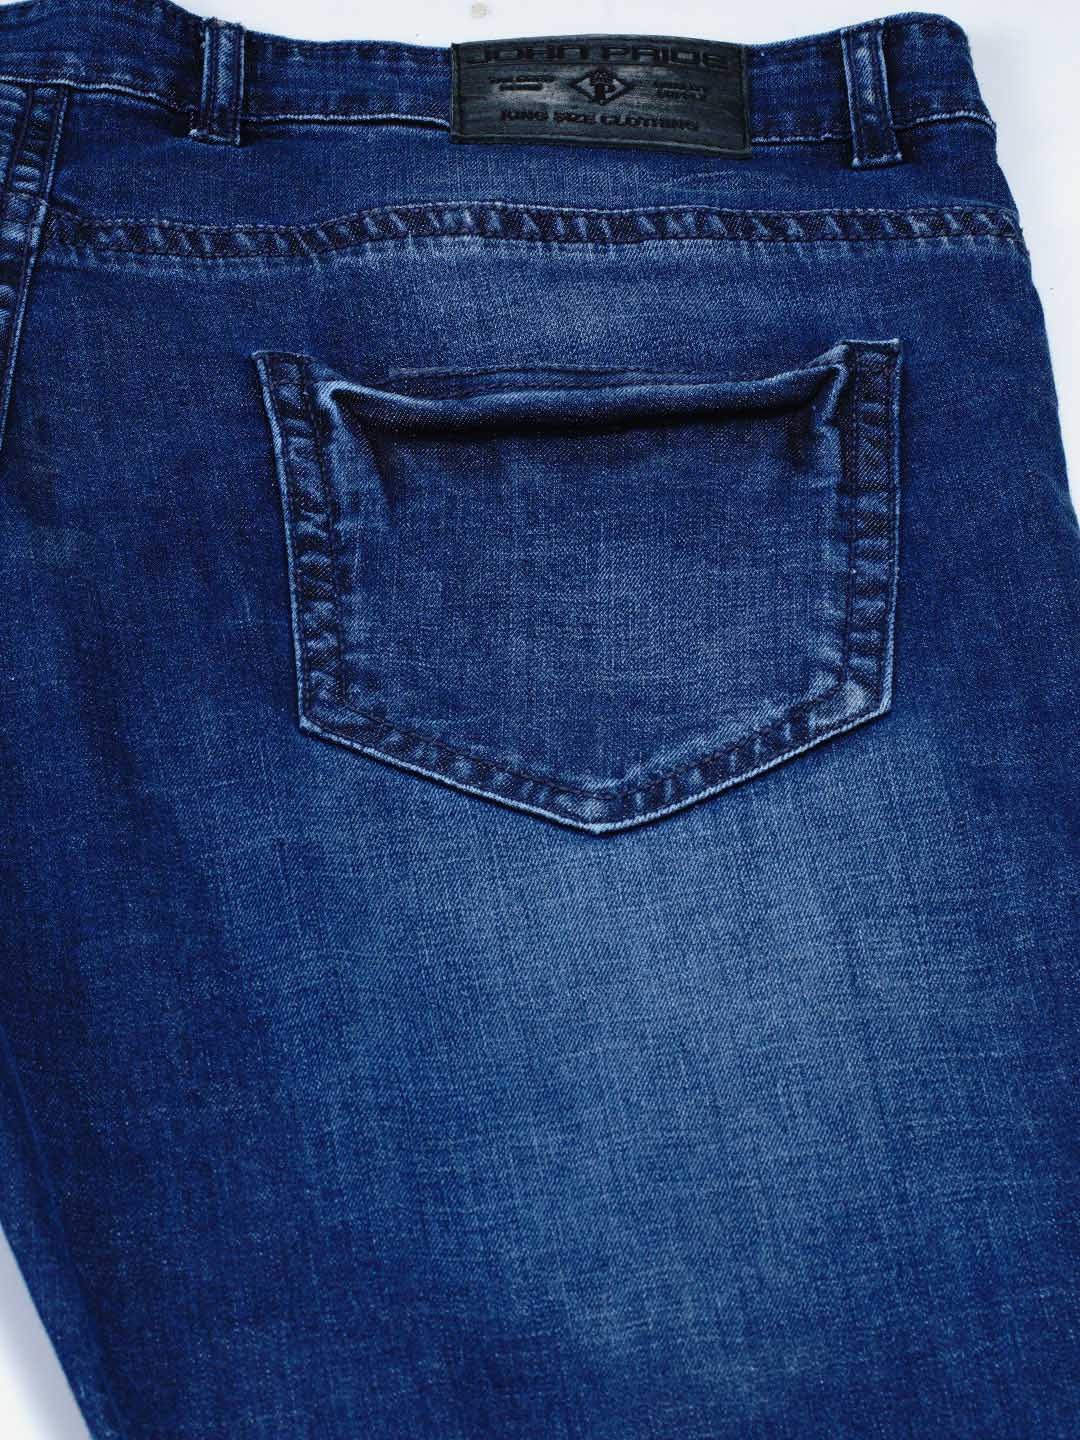 bottomwear/jeans/JPJ12130/jpj12130-5.jpg